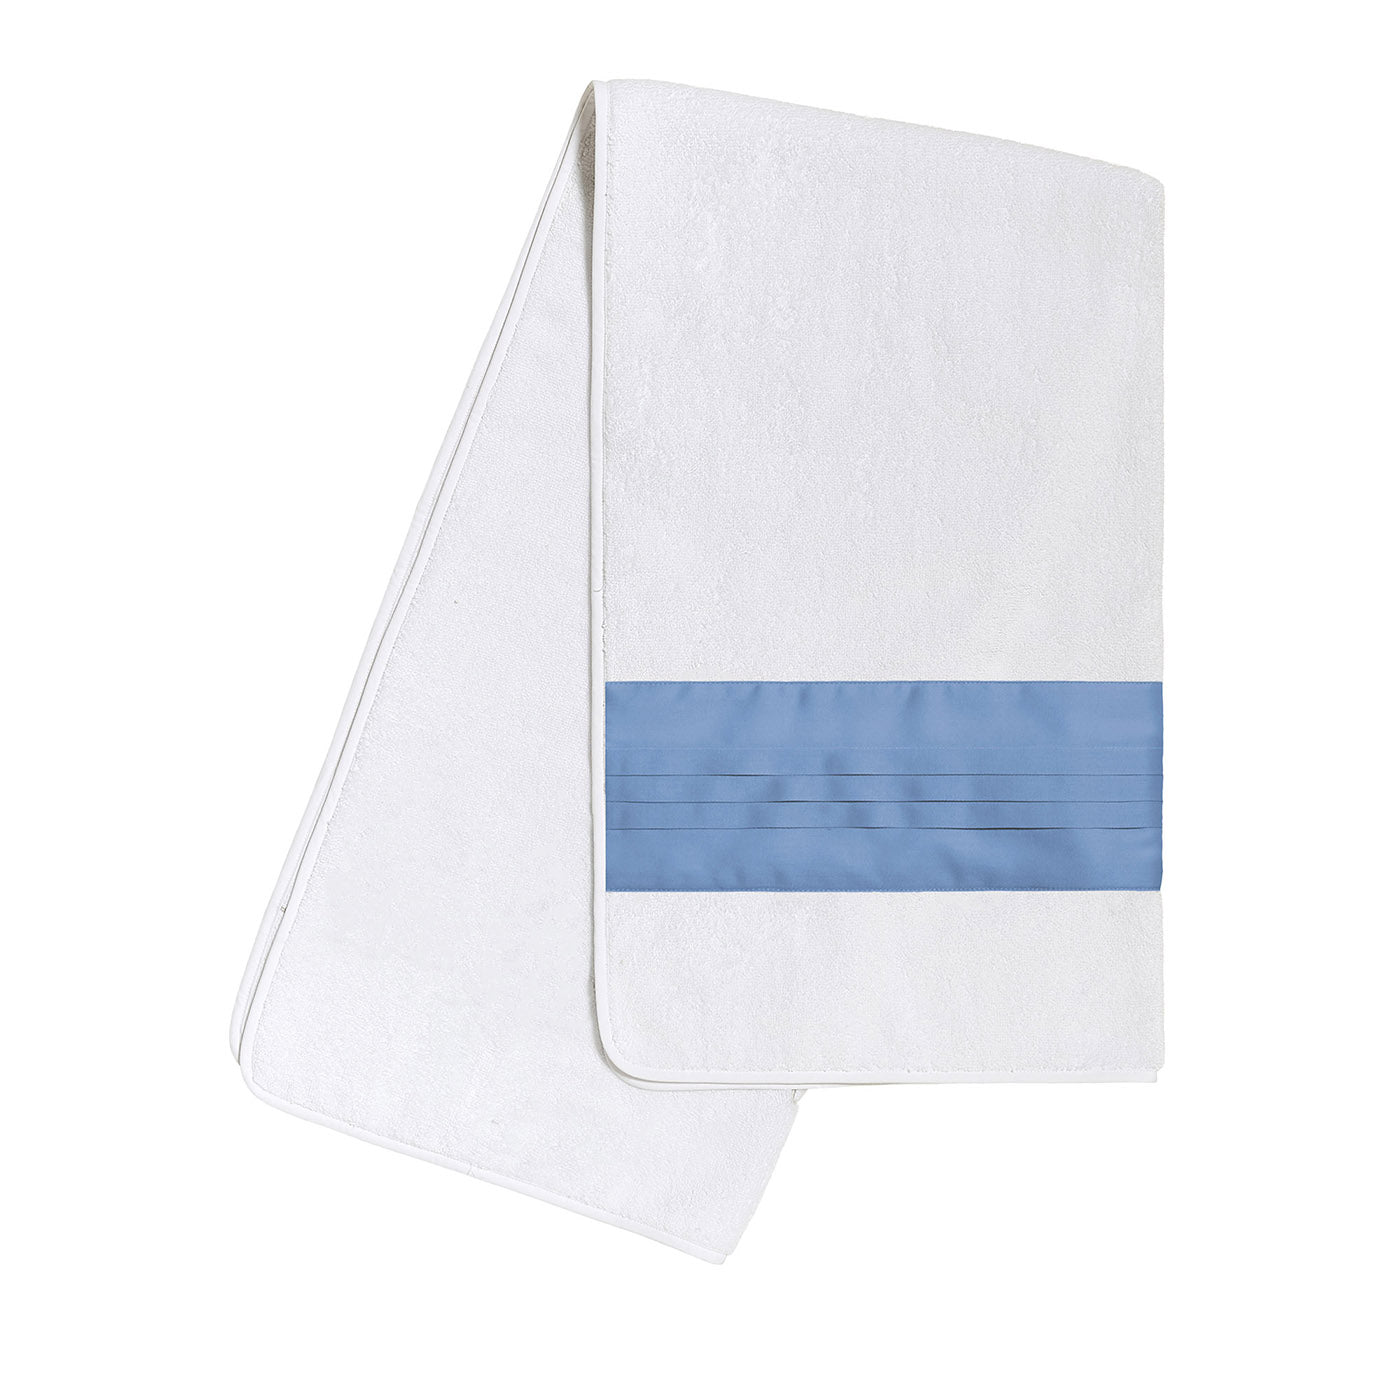 Plissè White & Country Blue Bath Towel - Main view